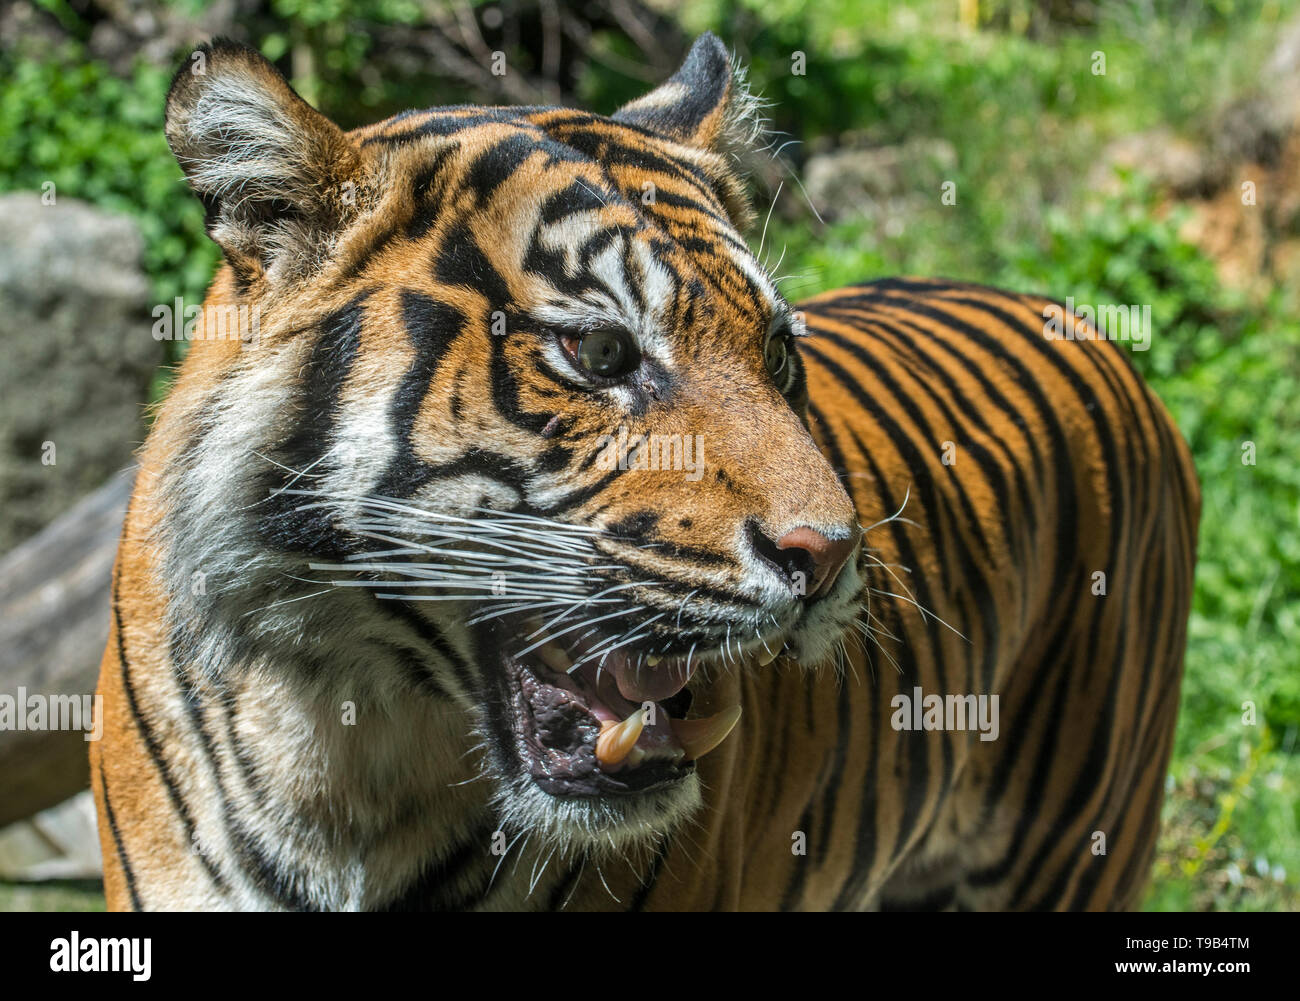 Close-up of roaring graillonnement / tigre de Sumatra (Panthera tigris sondaica) montrant des incisives et canines en bouche ouverte, originaire de Sumatra, Indonésie Banque D'Images